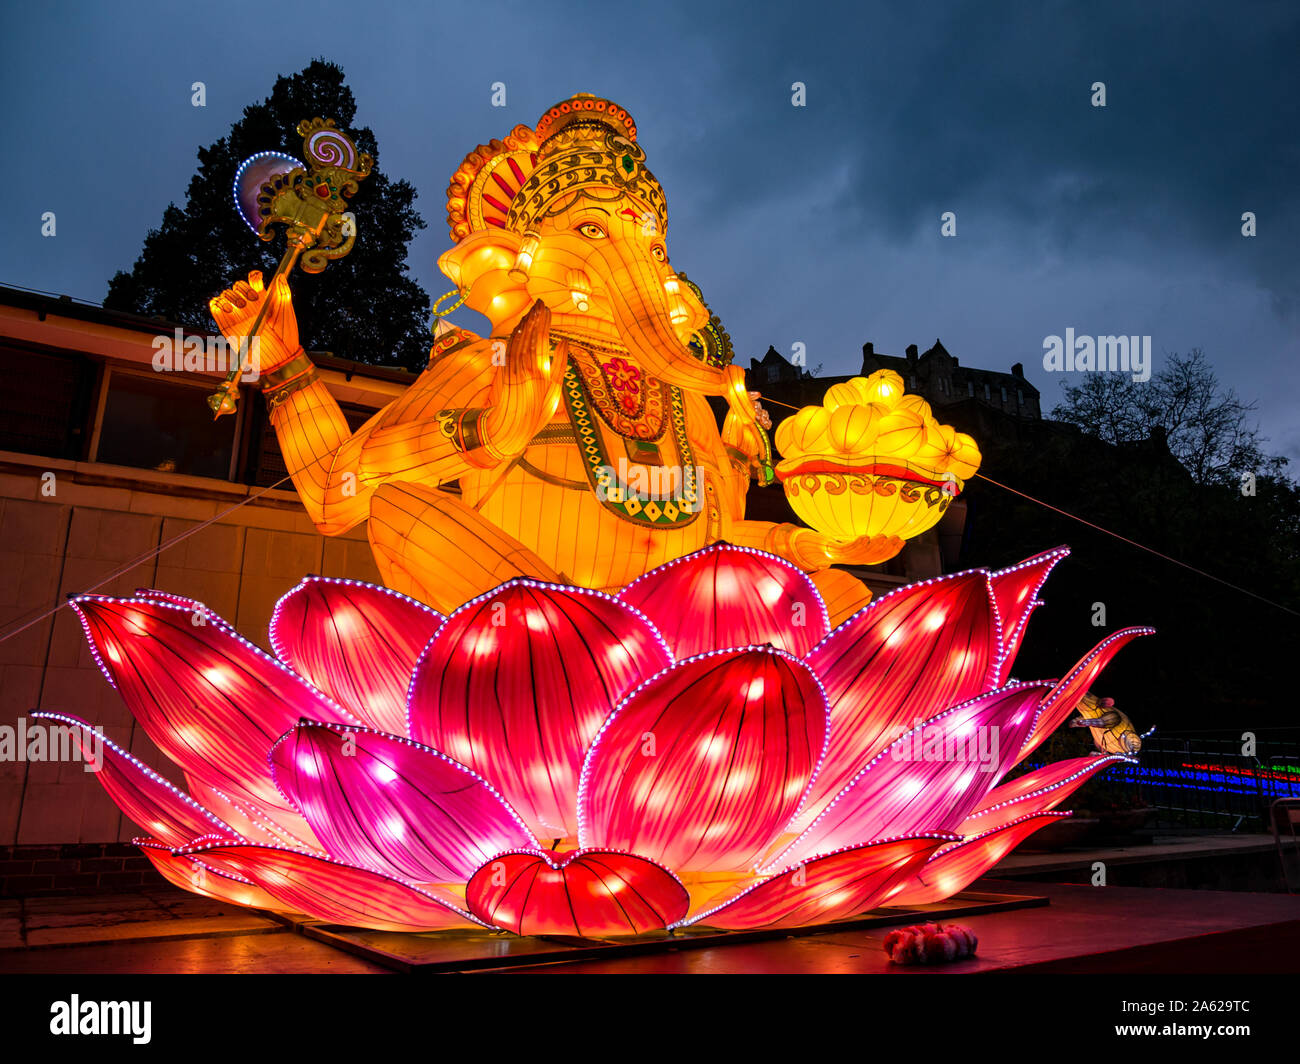 Ross Bandstand, Princes Street Garden, Édimbourg, Écosse, Royaume-Uni, le 23 octobre 2019. Diwali Festival des lumières : allumer des illuminations pour Edimbourg Diwali, une fête de l'hiver indien. Un illuminé Ganesh, dieu éléphant dirigé, lanterne au-dessous du château d'Édimbourg rock la nuit Banque D'Images